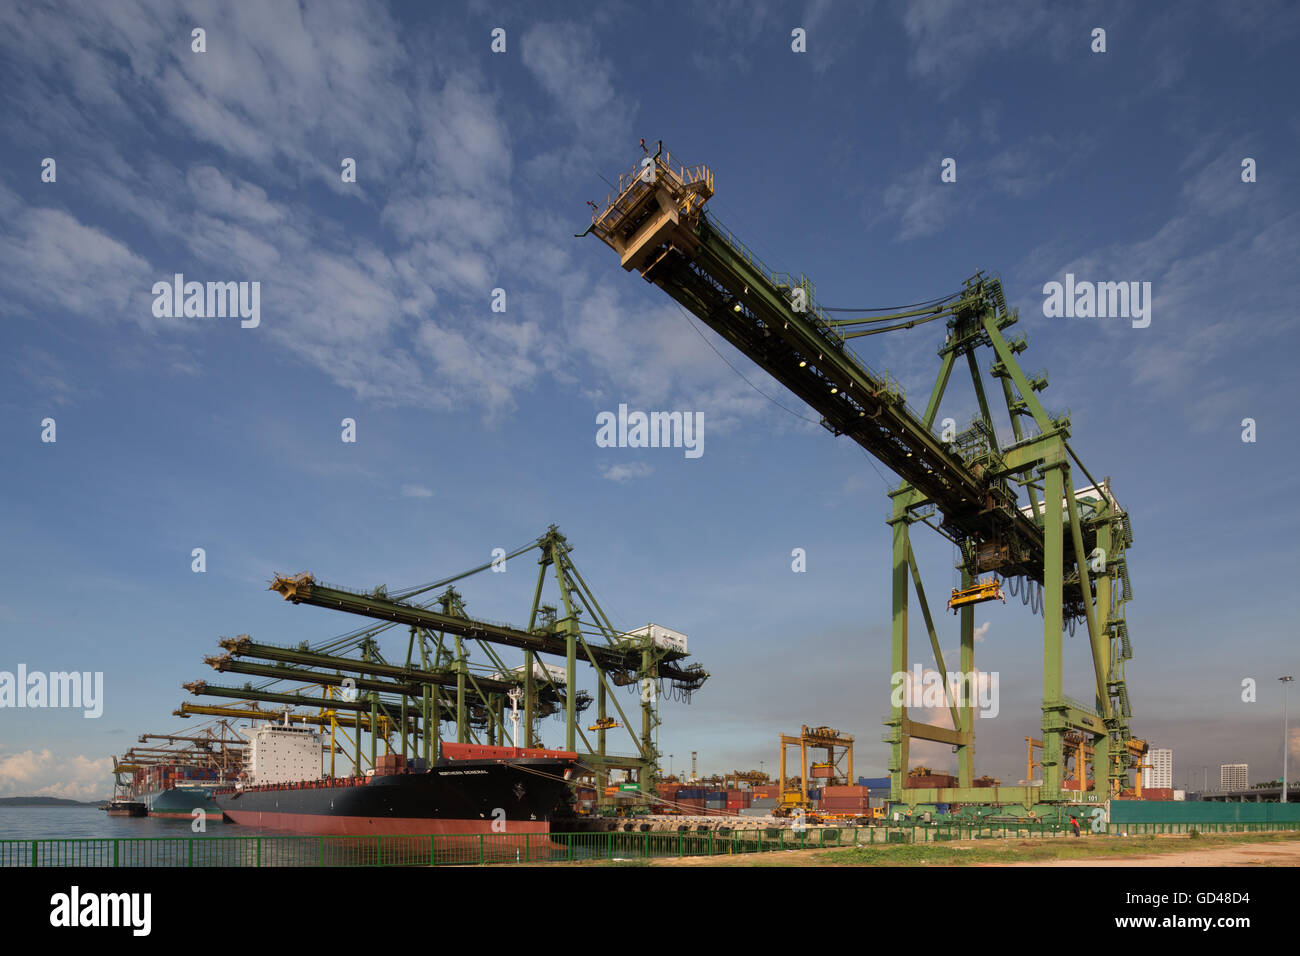 Vue entière des grues à conteneurs dans le rang et les navires en fonctionnement à l'un des terminaux portuaires. Singapour. Banque D'Images